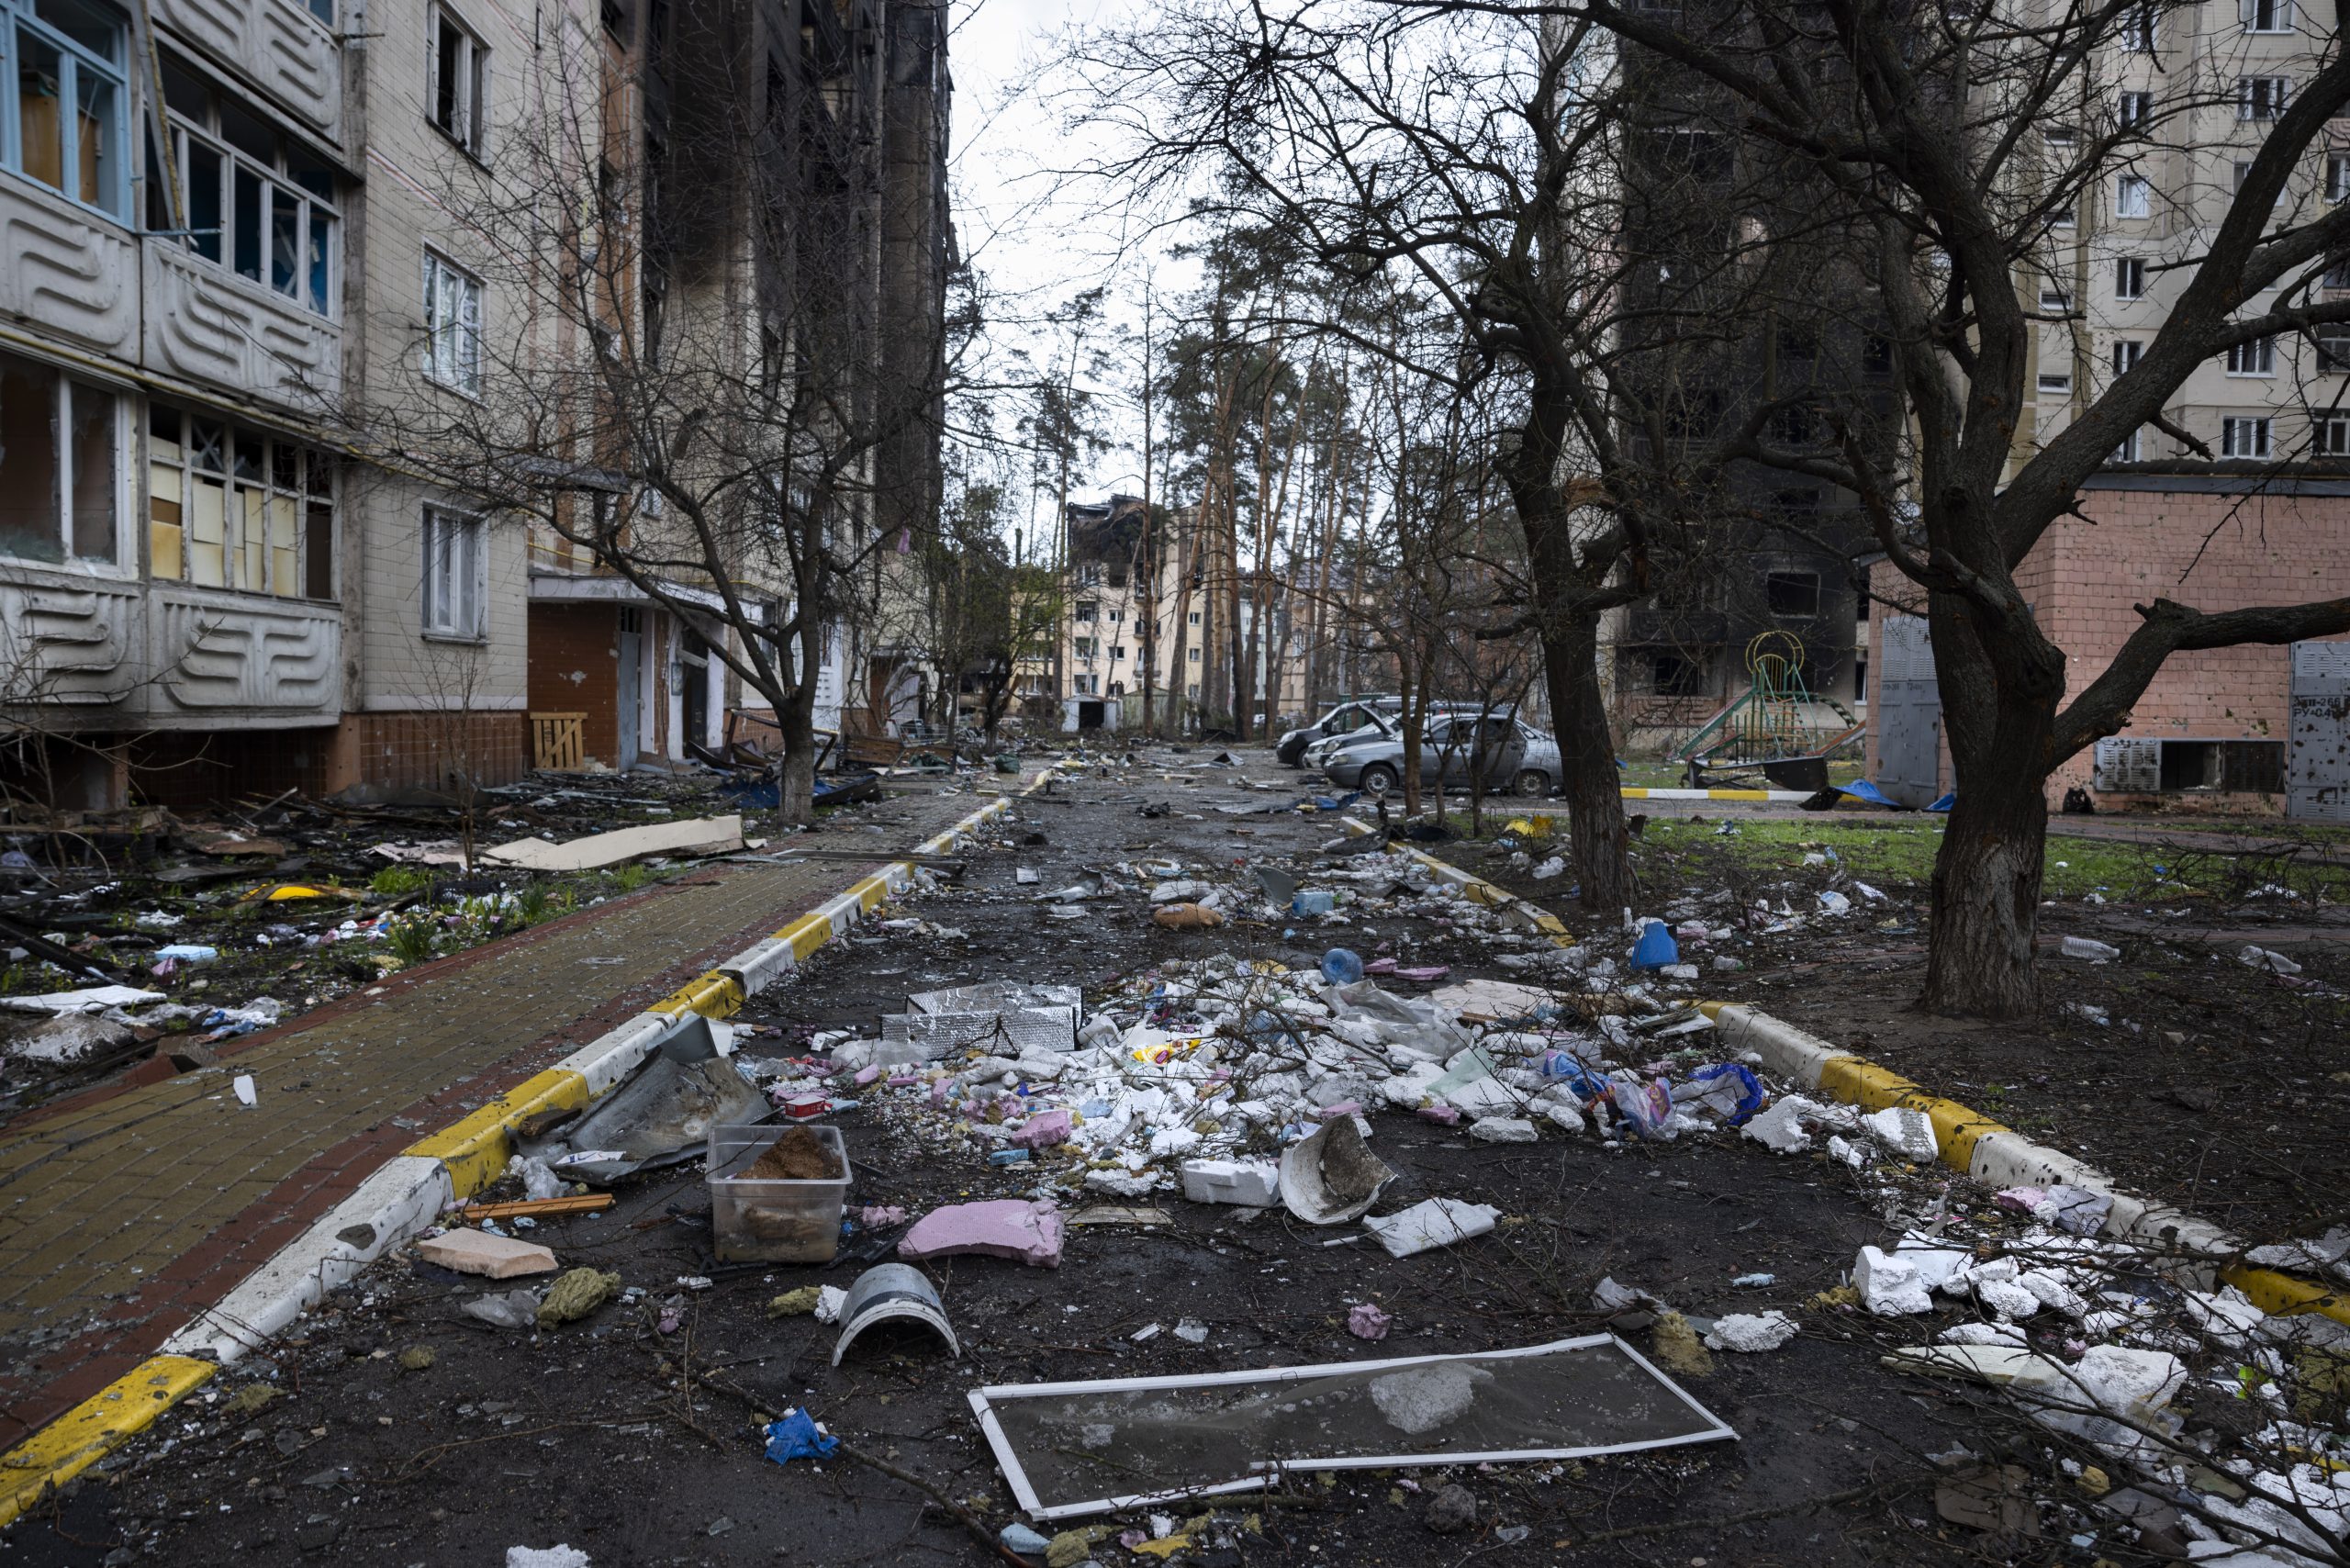 Dans une rue de la ville de Boutcha en Ukraine, les immeubles sont noirs après des incendies. Le sol est recouvert de débris.